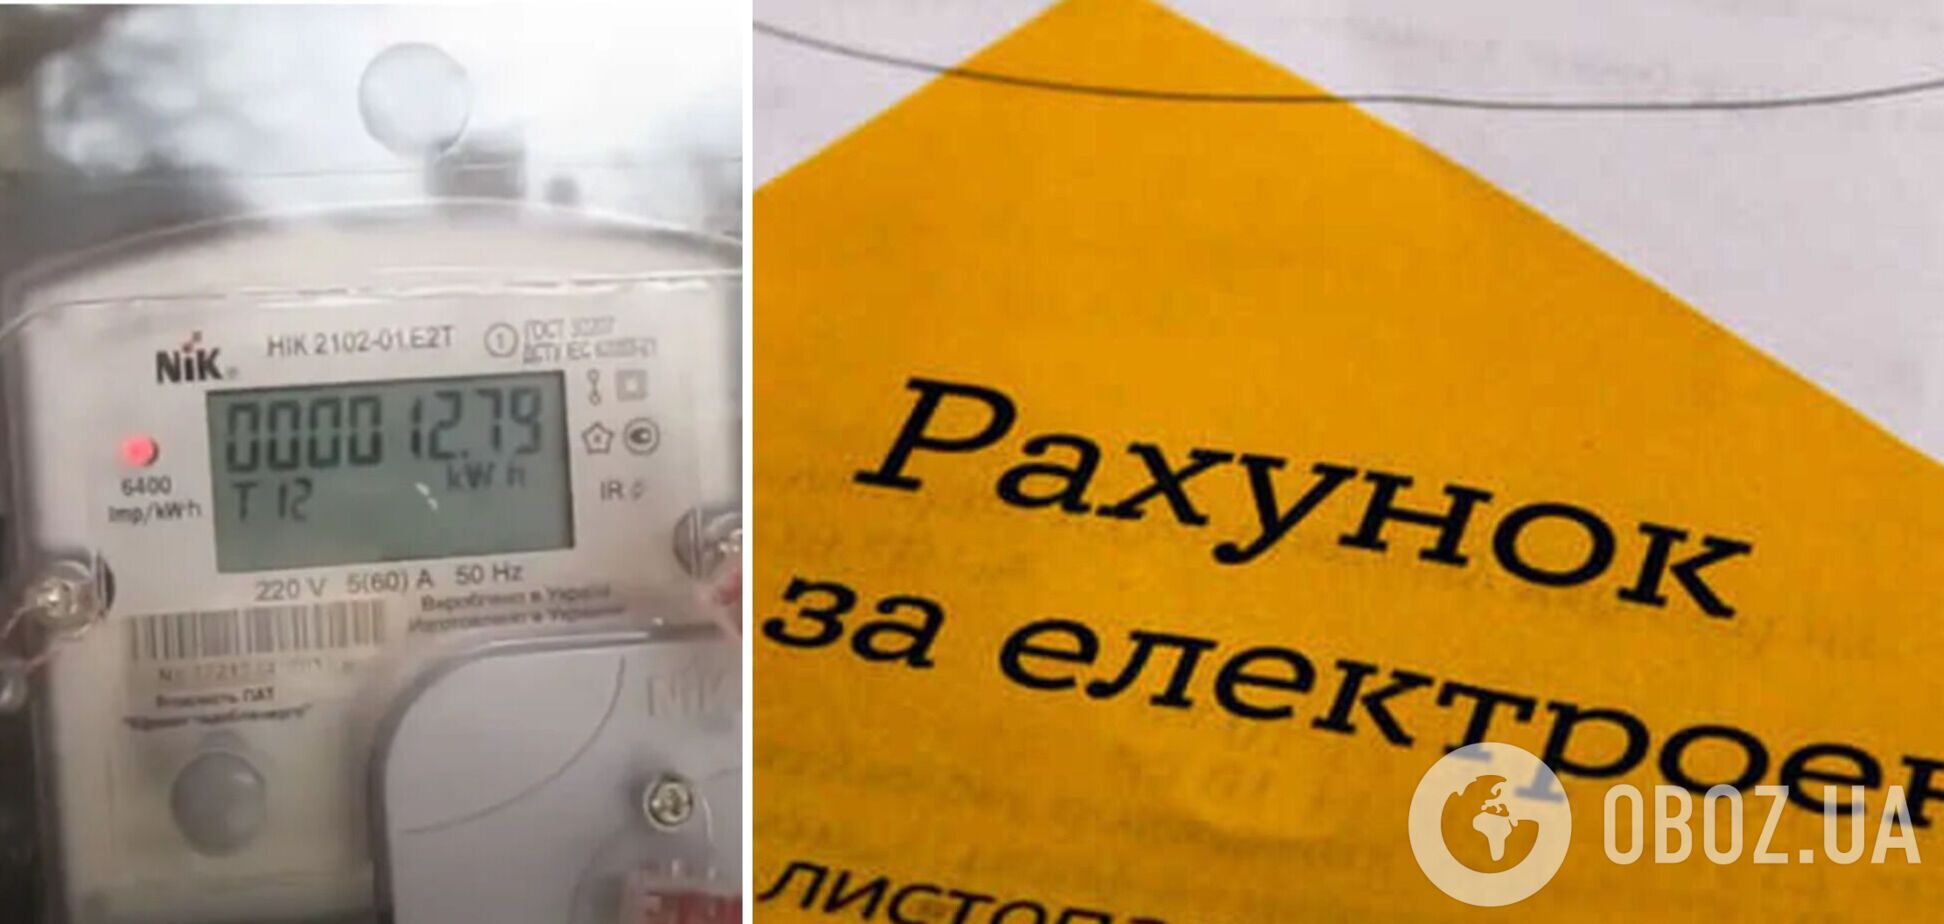 Українці можуть встановити прилад, який дозволить легально платити за електроенергію на сотні гривень менше